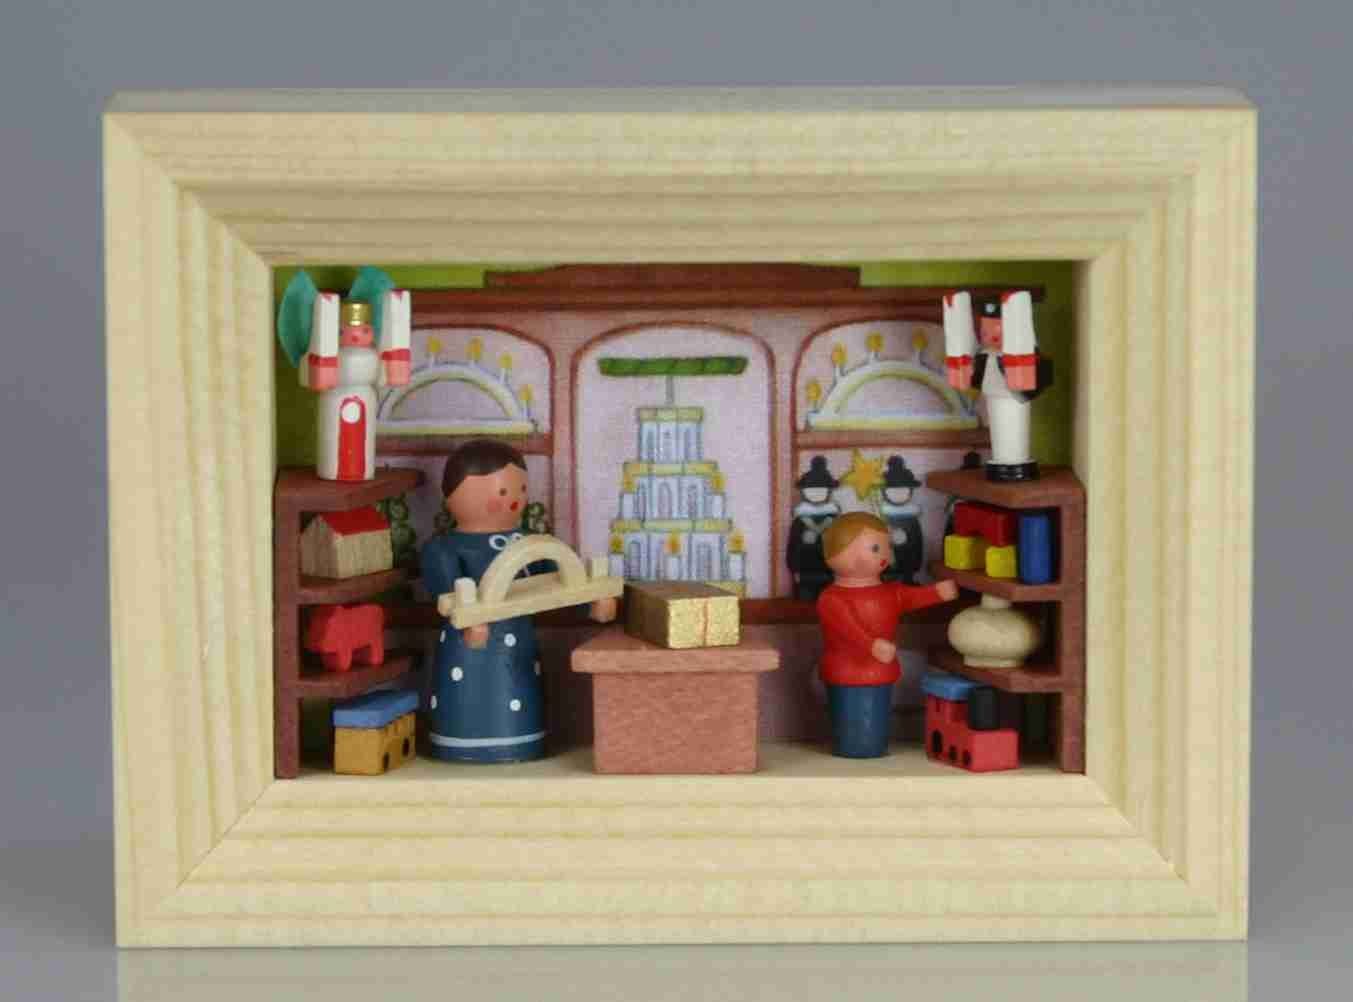 Stübelmacher Gunter Flath Weihnachtsfigur Miniatur im Rähmchen Spielzeugladen